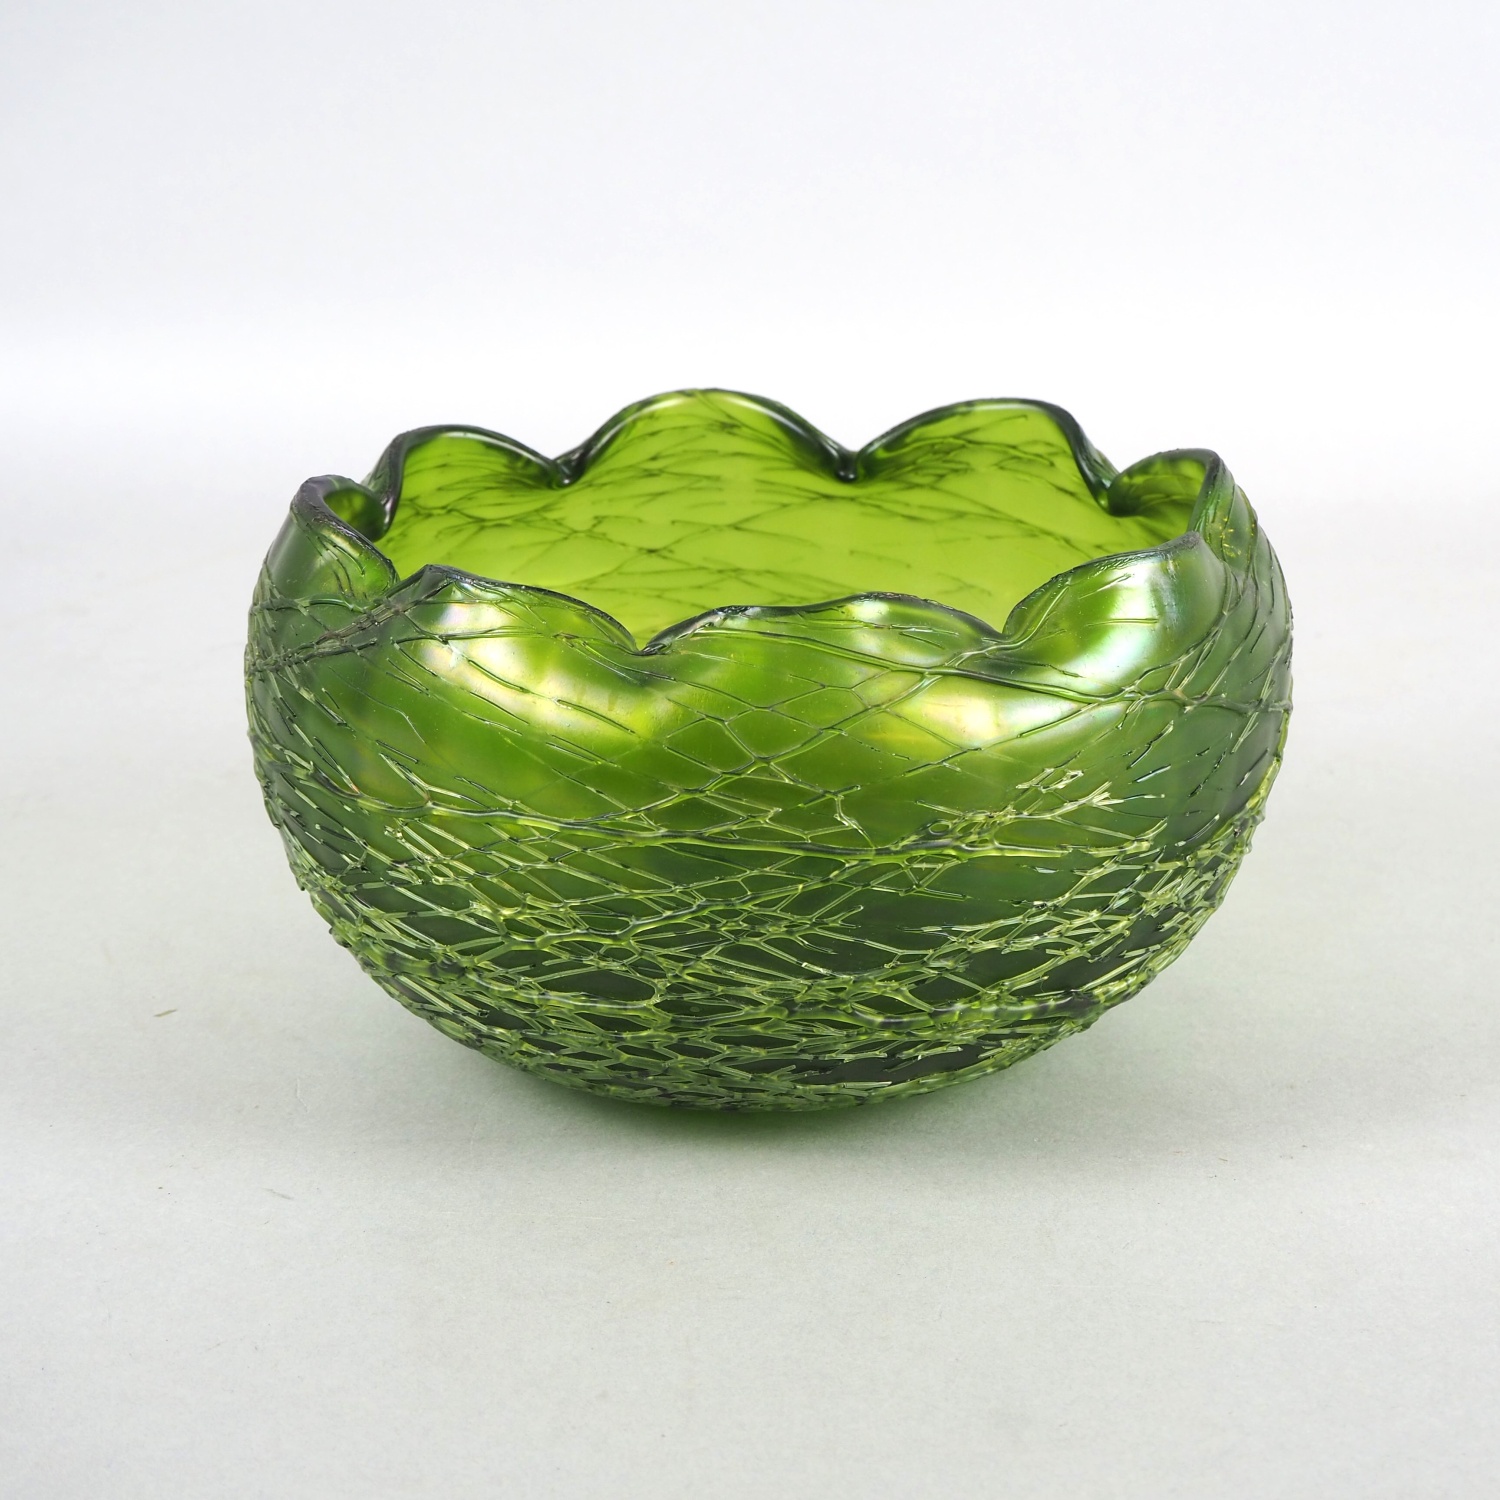 Glass bowl "Loetz", around 1900. - Image 2 of 2